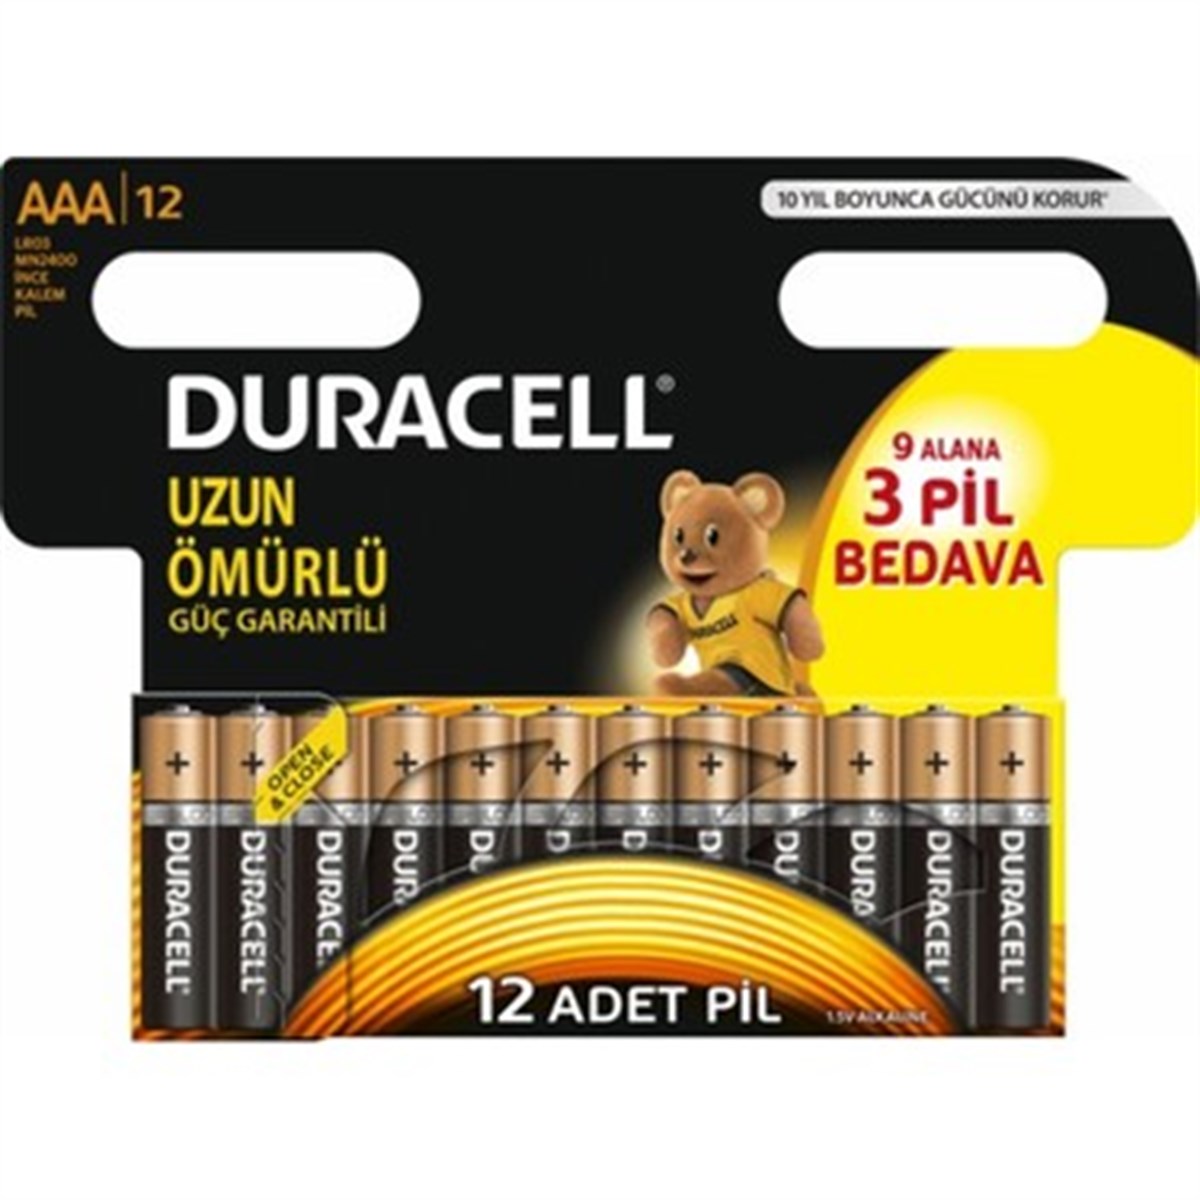 Duracell AA Battery 12 pcs (9 Get 3 Free)-LeylekKapida.com